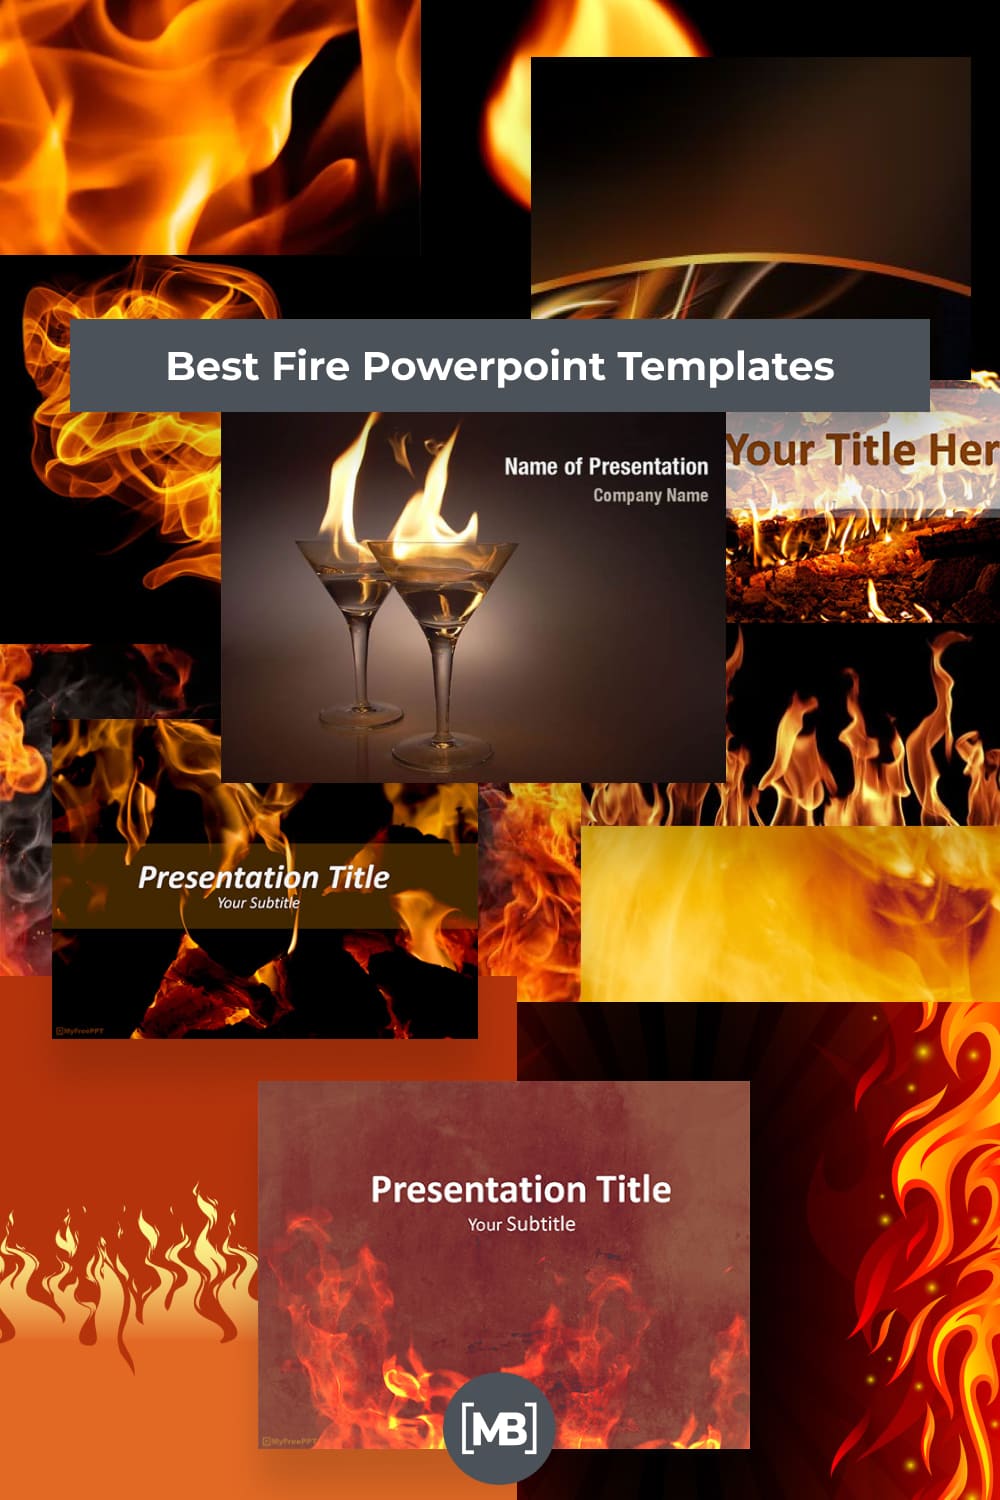 Fire PowerPoint Templates Pinterest.